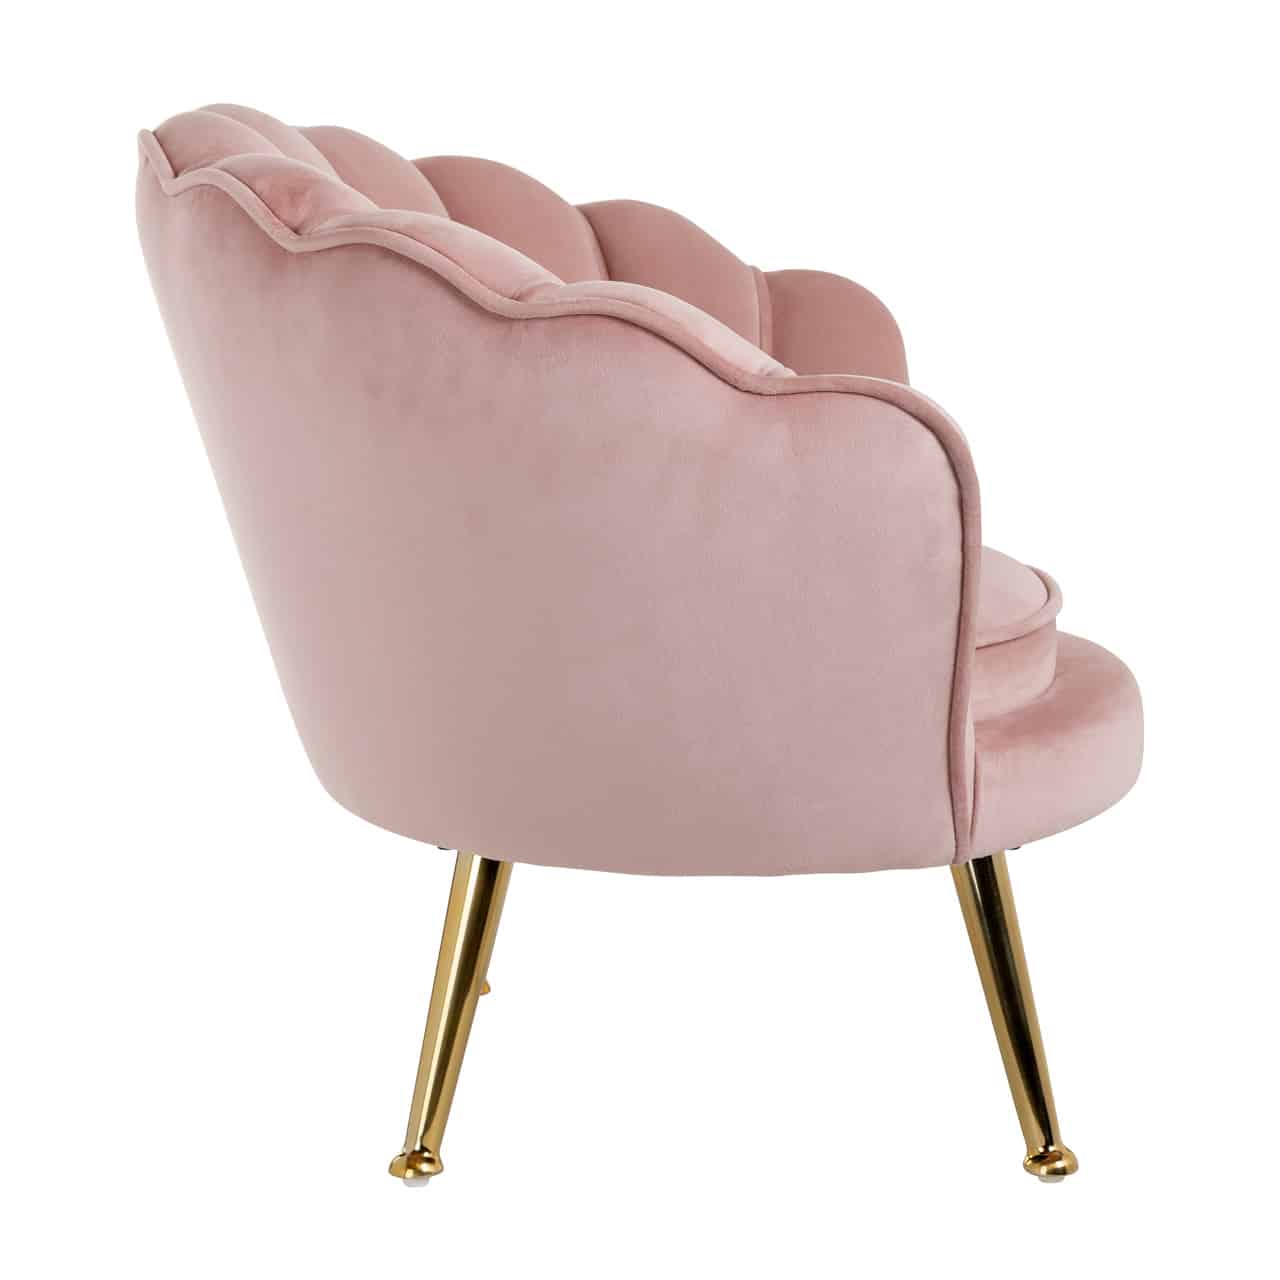 RI - S4458 pink fotel